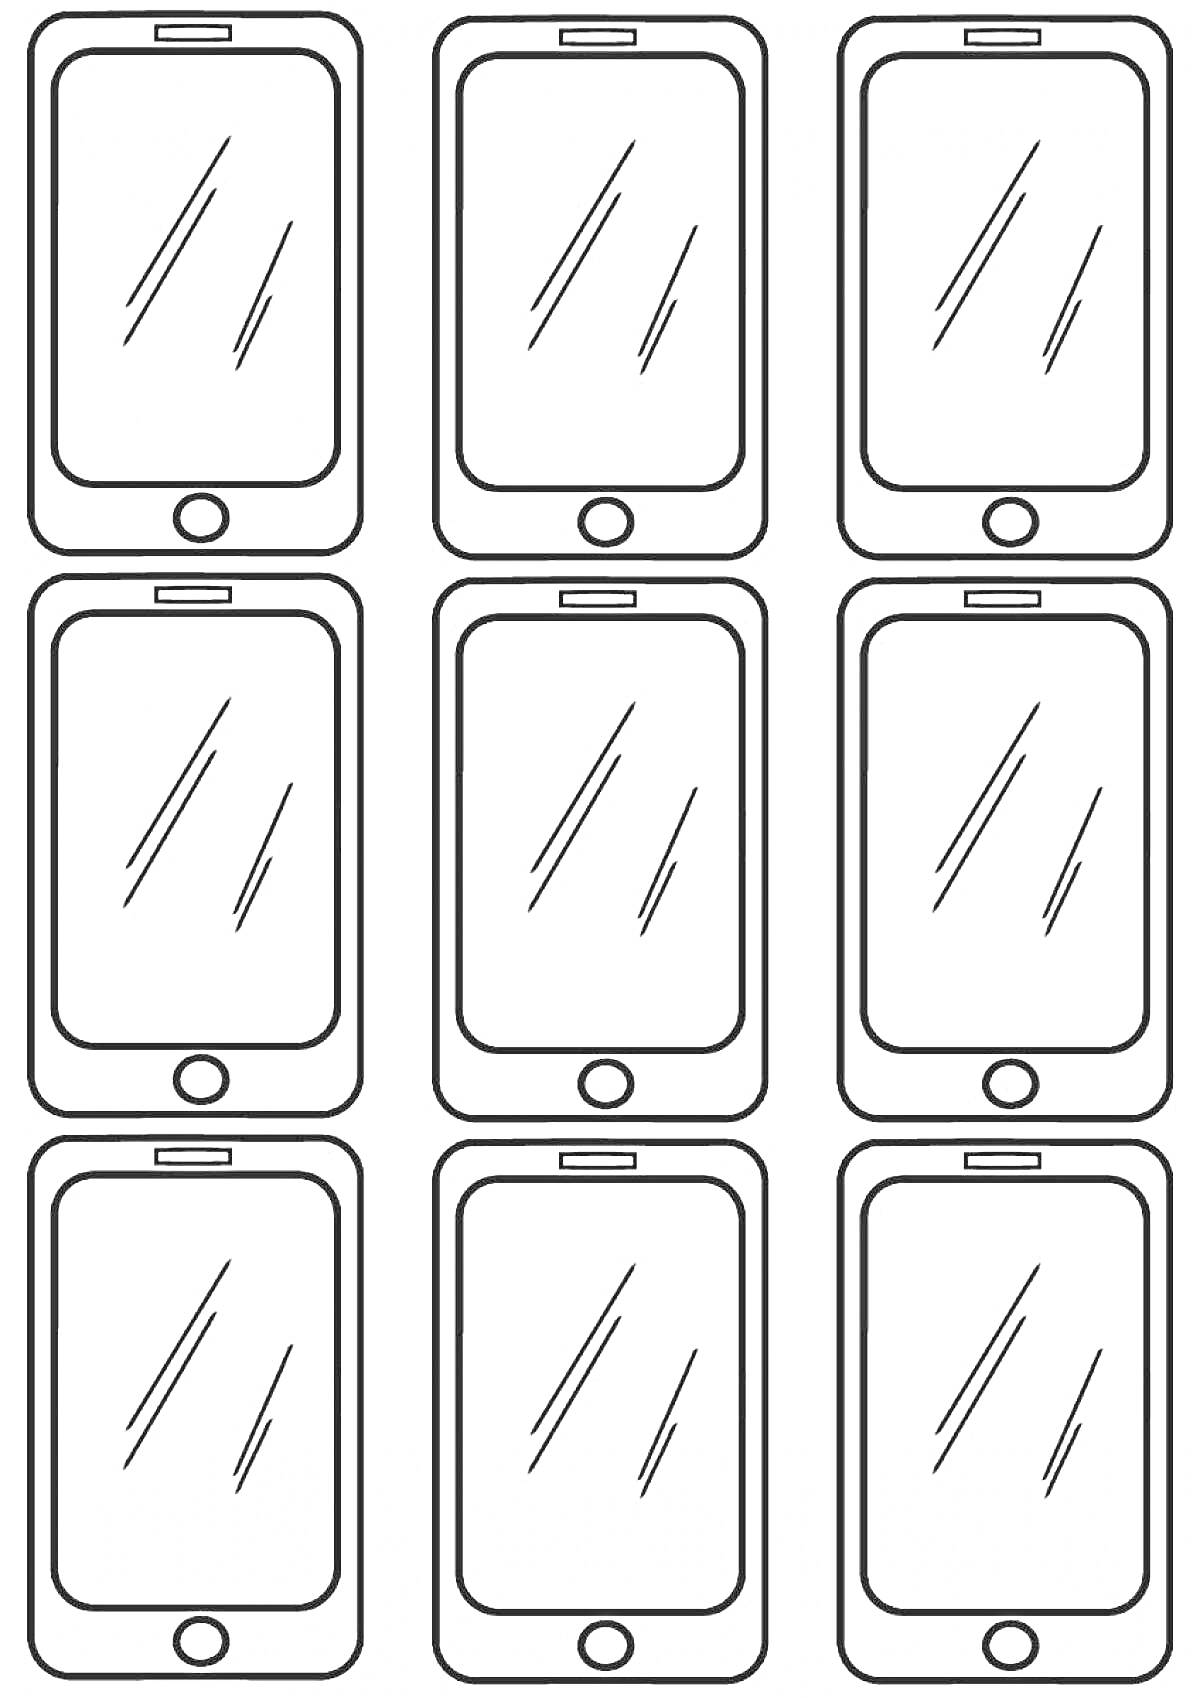 Раскраска Шаблон для раскрашивания с изображением девяти смартфонов с круглыми кнопками и динамиками